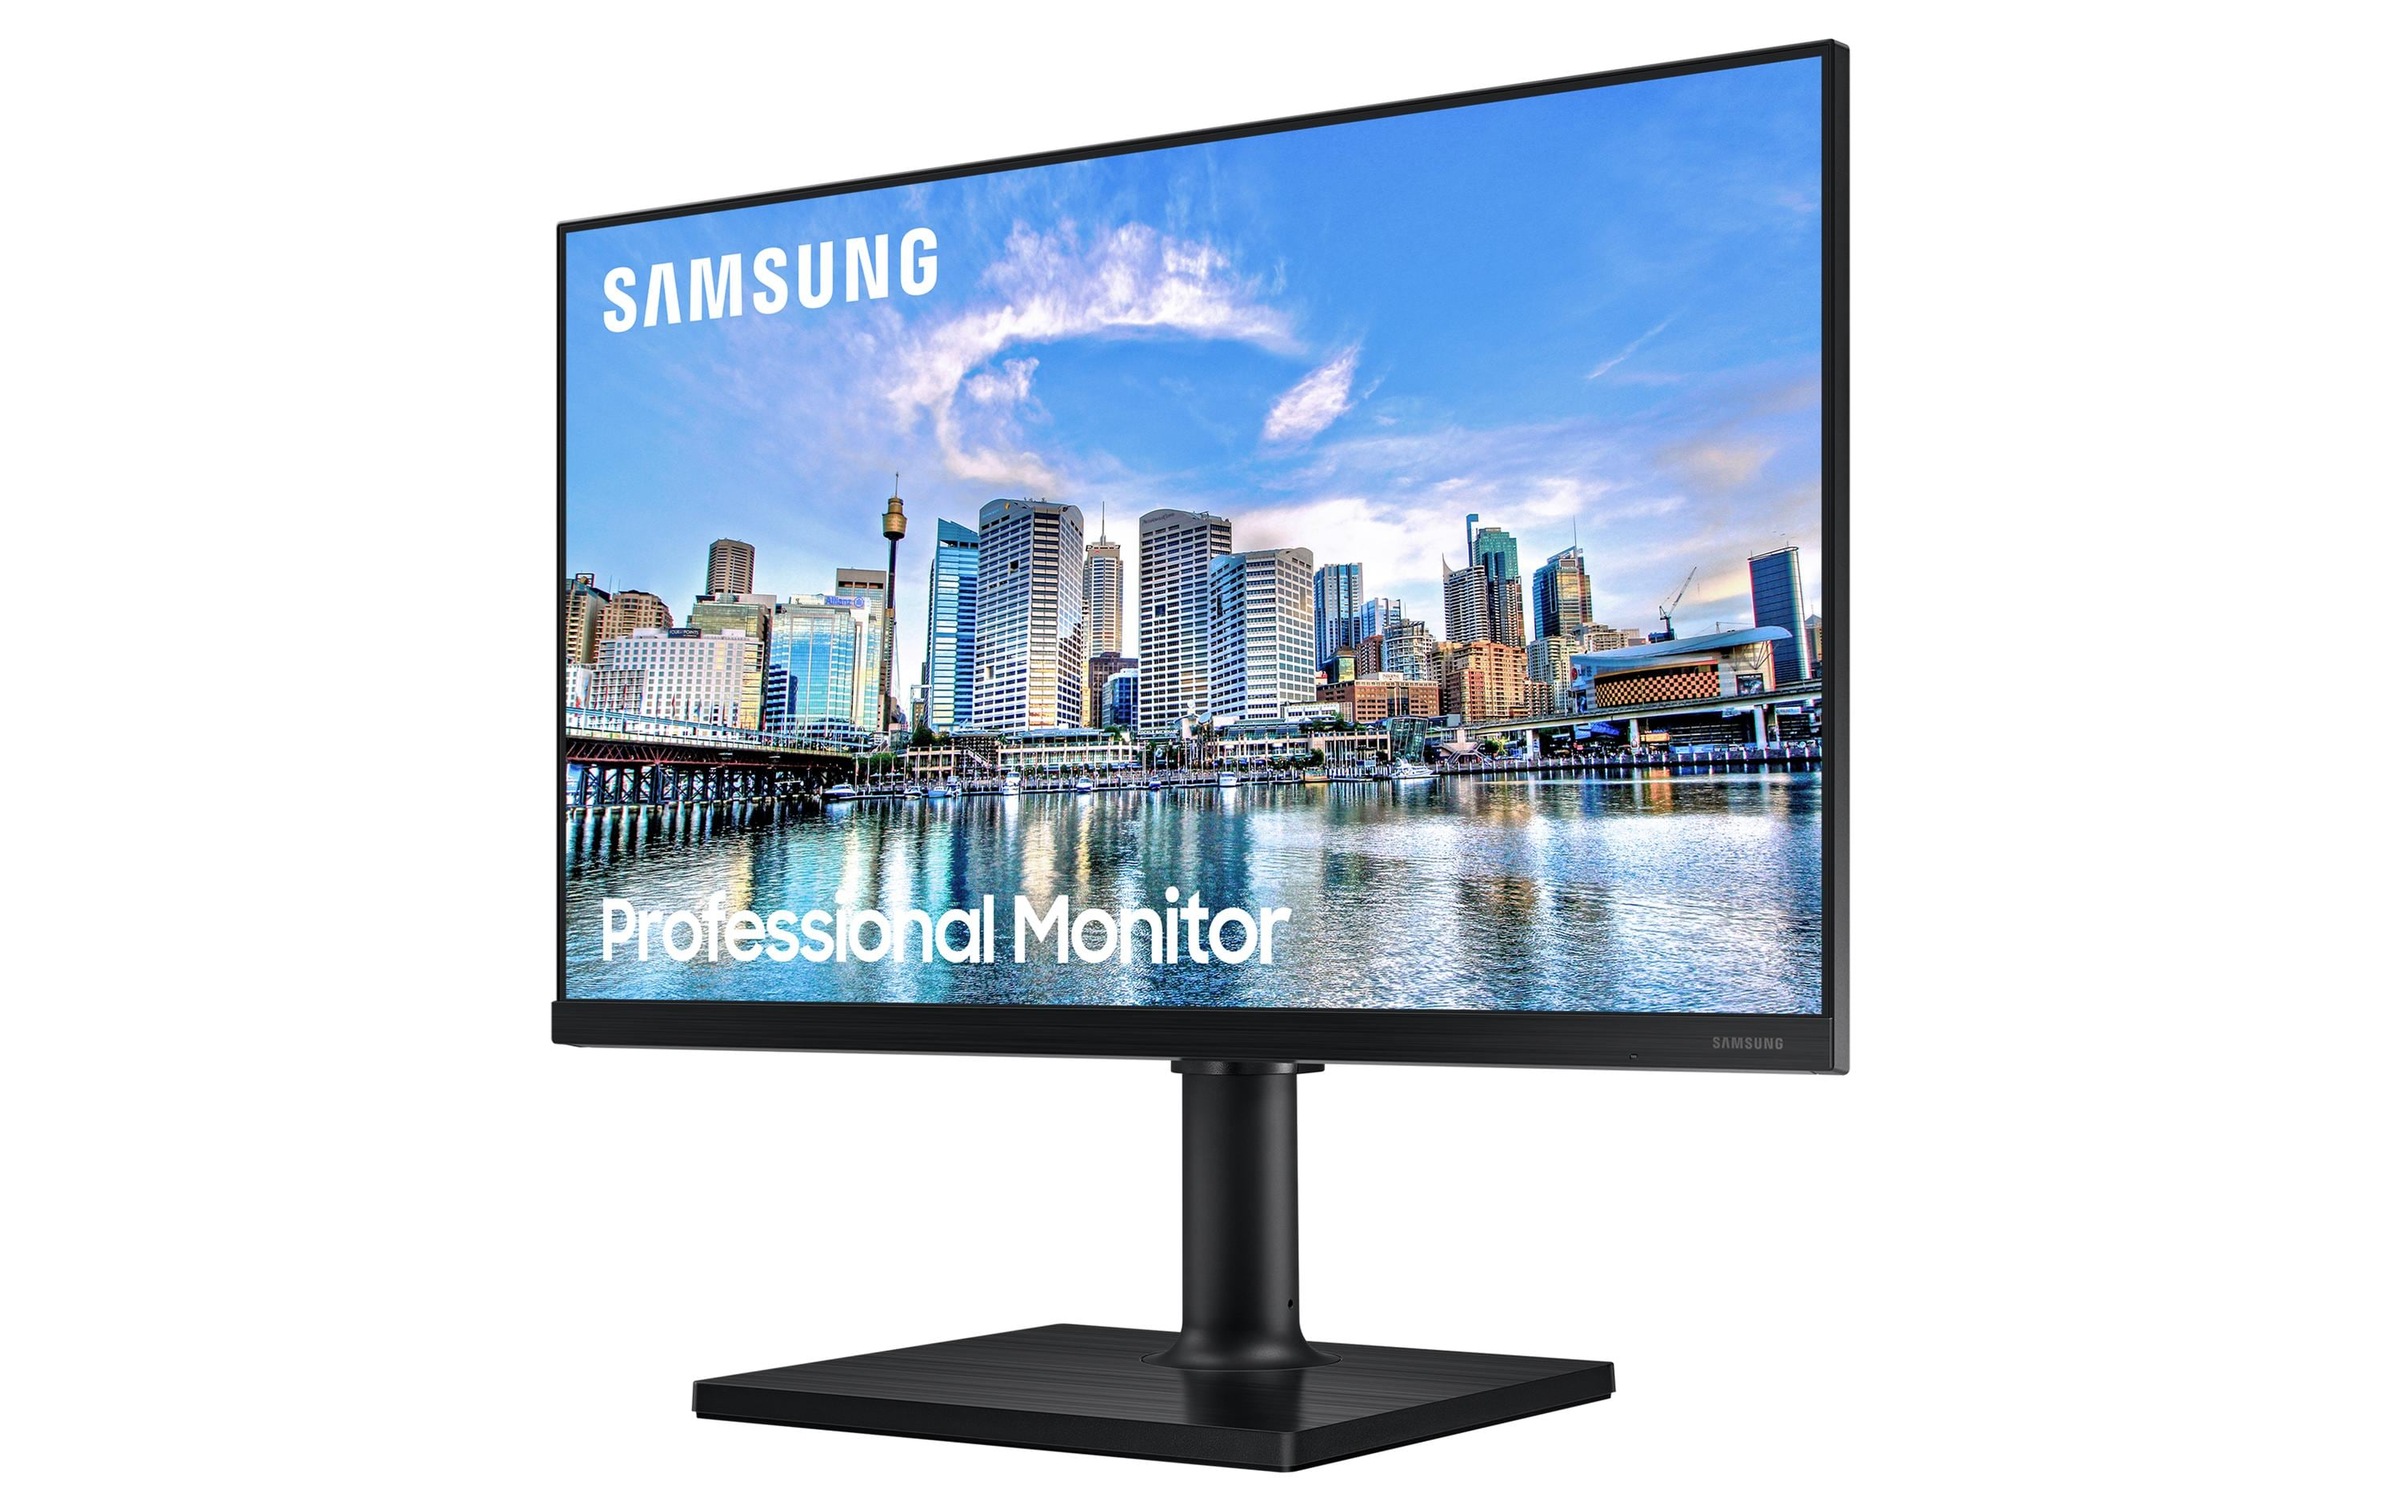 Samsung LED-Monitor »LF27T450FZUXEN«, 68,31 cm/27 Zoll, 1920 x 1080 px, Full HD, 5 ms Reaktionszeit